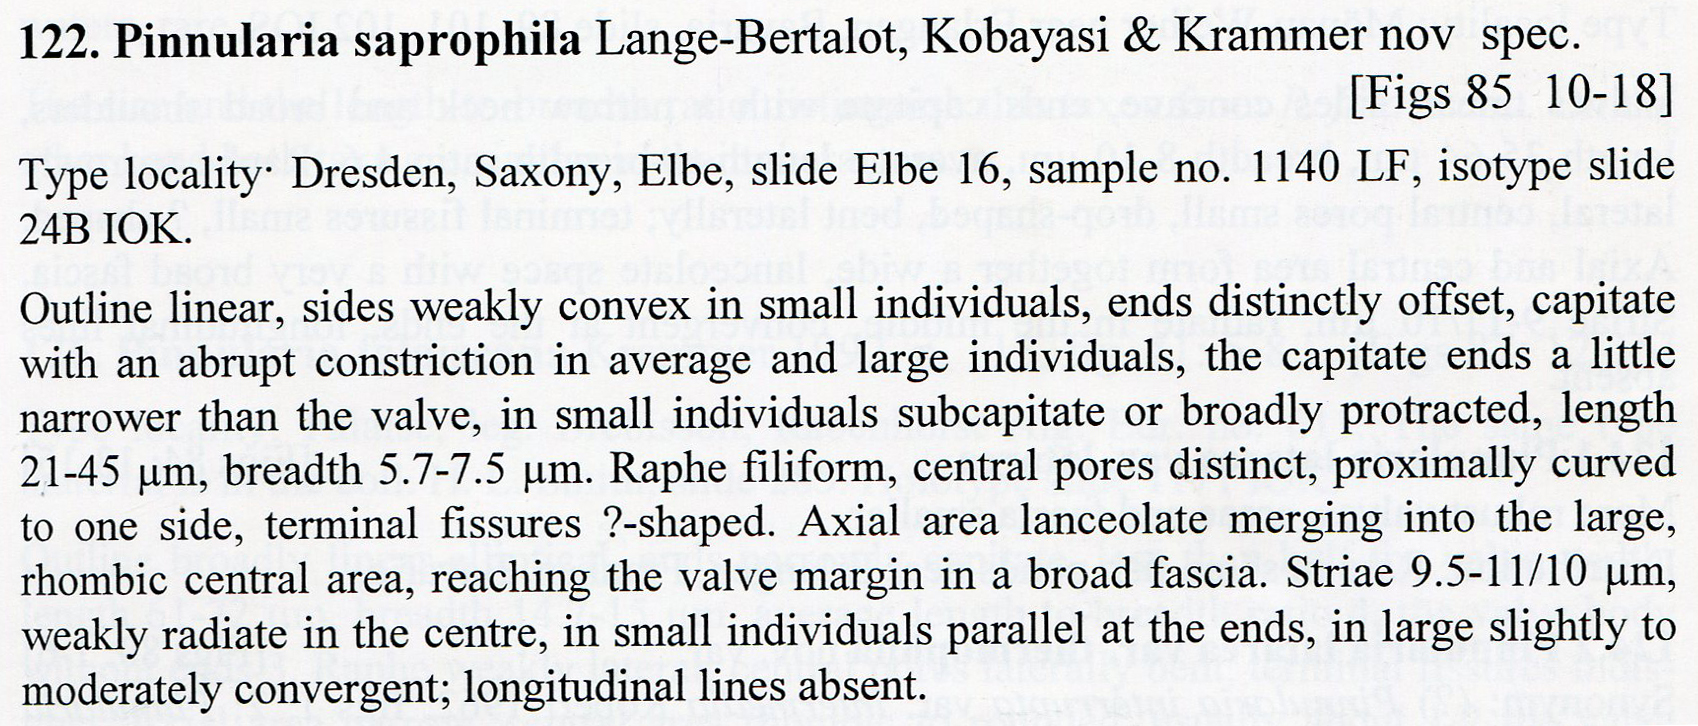 P Saprophila Description030